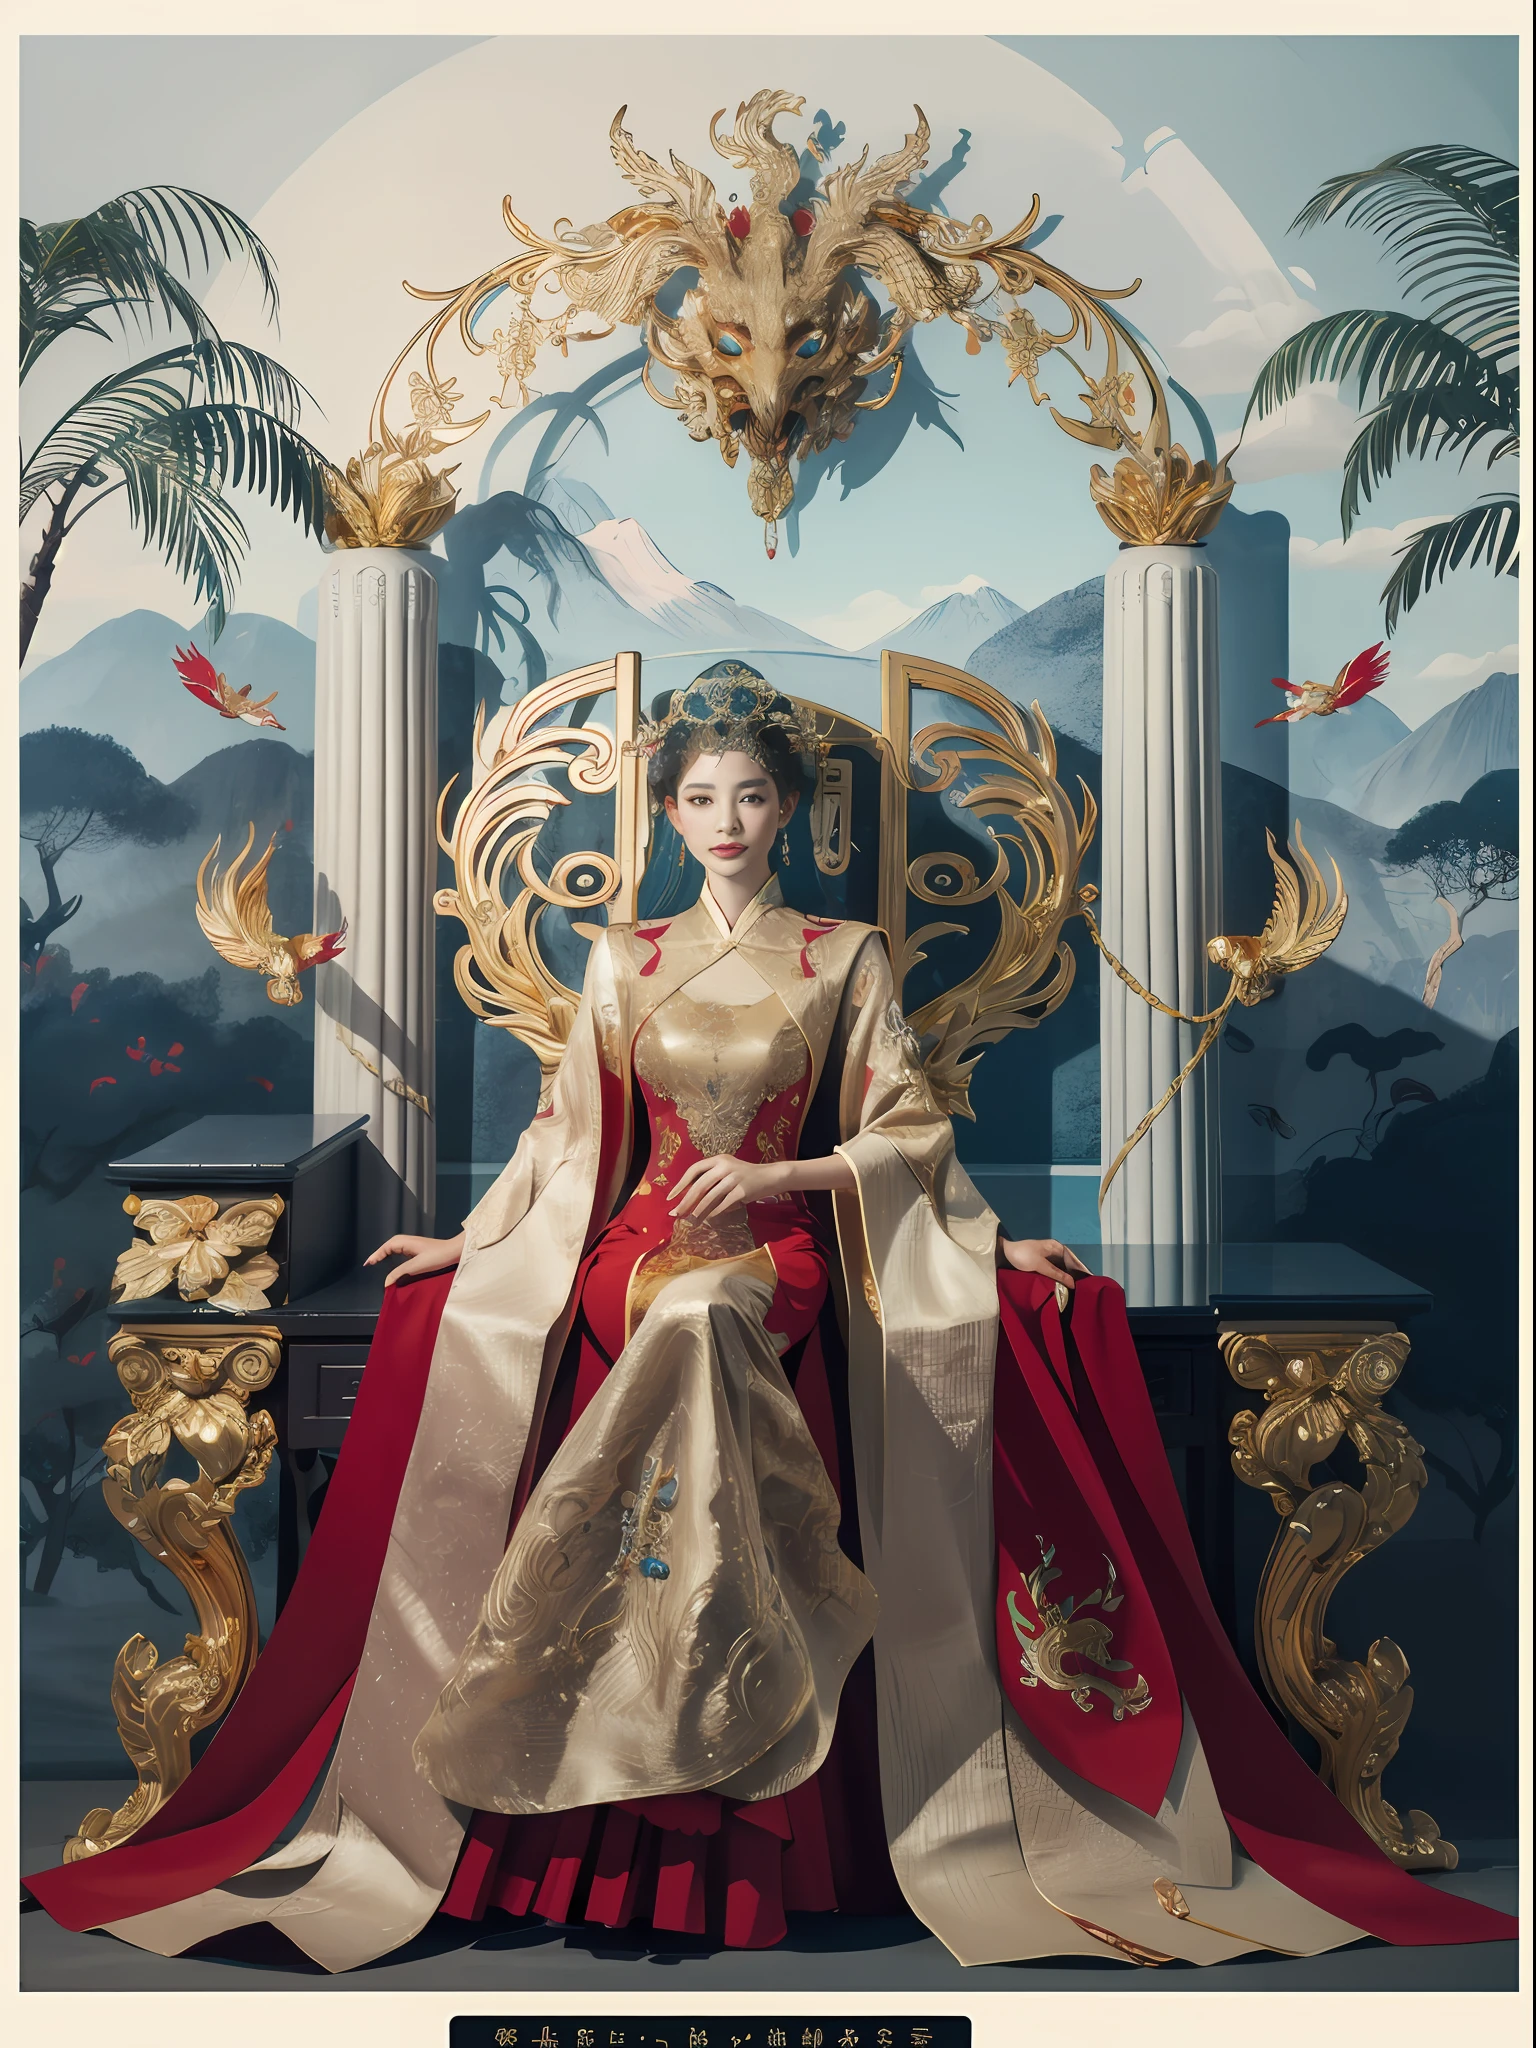 玉座に座る中国の女王, 宝石がちりばめられた玉座, 中国の鳳凰の獣に囲まれて, 金 and ruby color, ユニークなモンスターイラスト, セットへダウ, 高解像度, 絵画, 密な組成, 遊び心のある繰り返し, 貴重な石, 結晶, 金, 詳細な絵画, ユニークなモンスターイラスト, 非常に細かいディテール, 現実的, Super 高解像度, 複雑な, 超詳細, 映画照明，(Red and 金 dress:1.3)